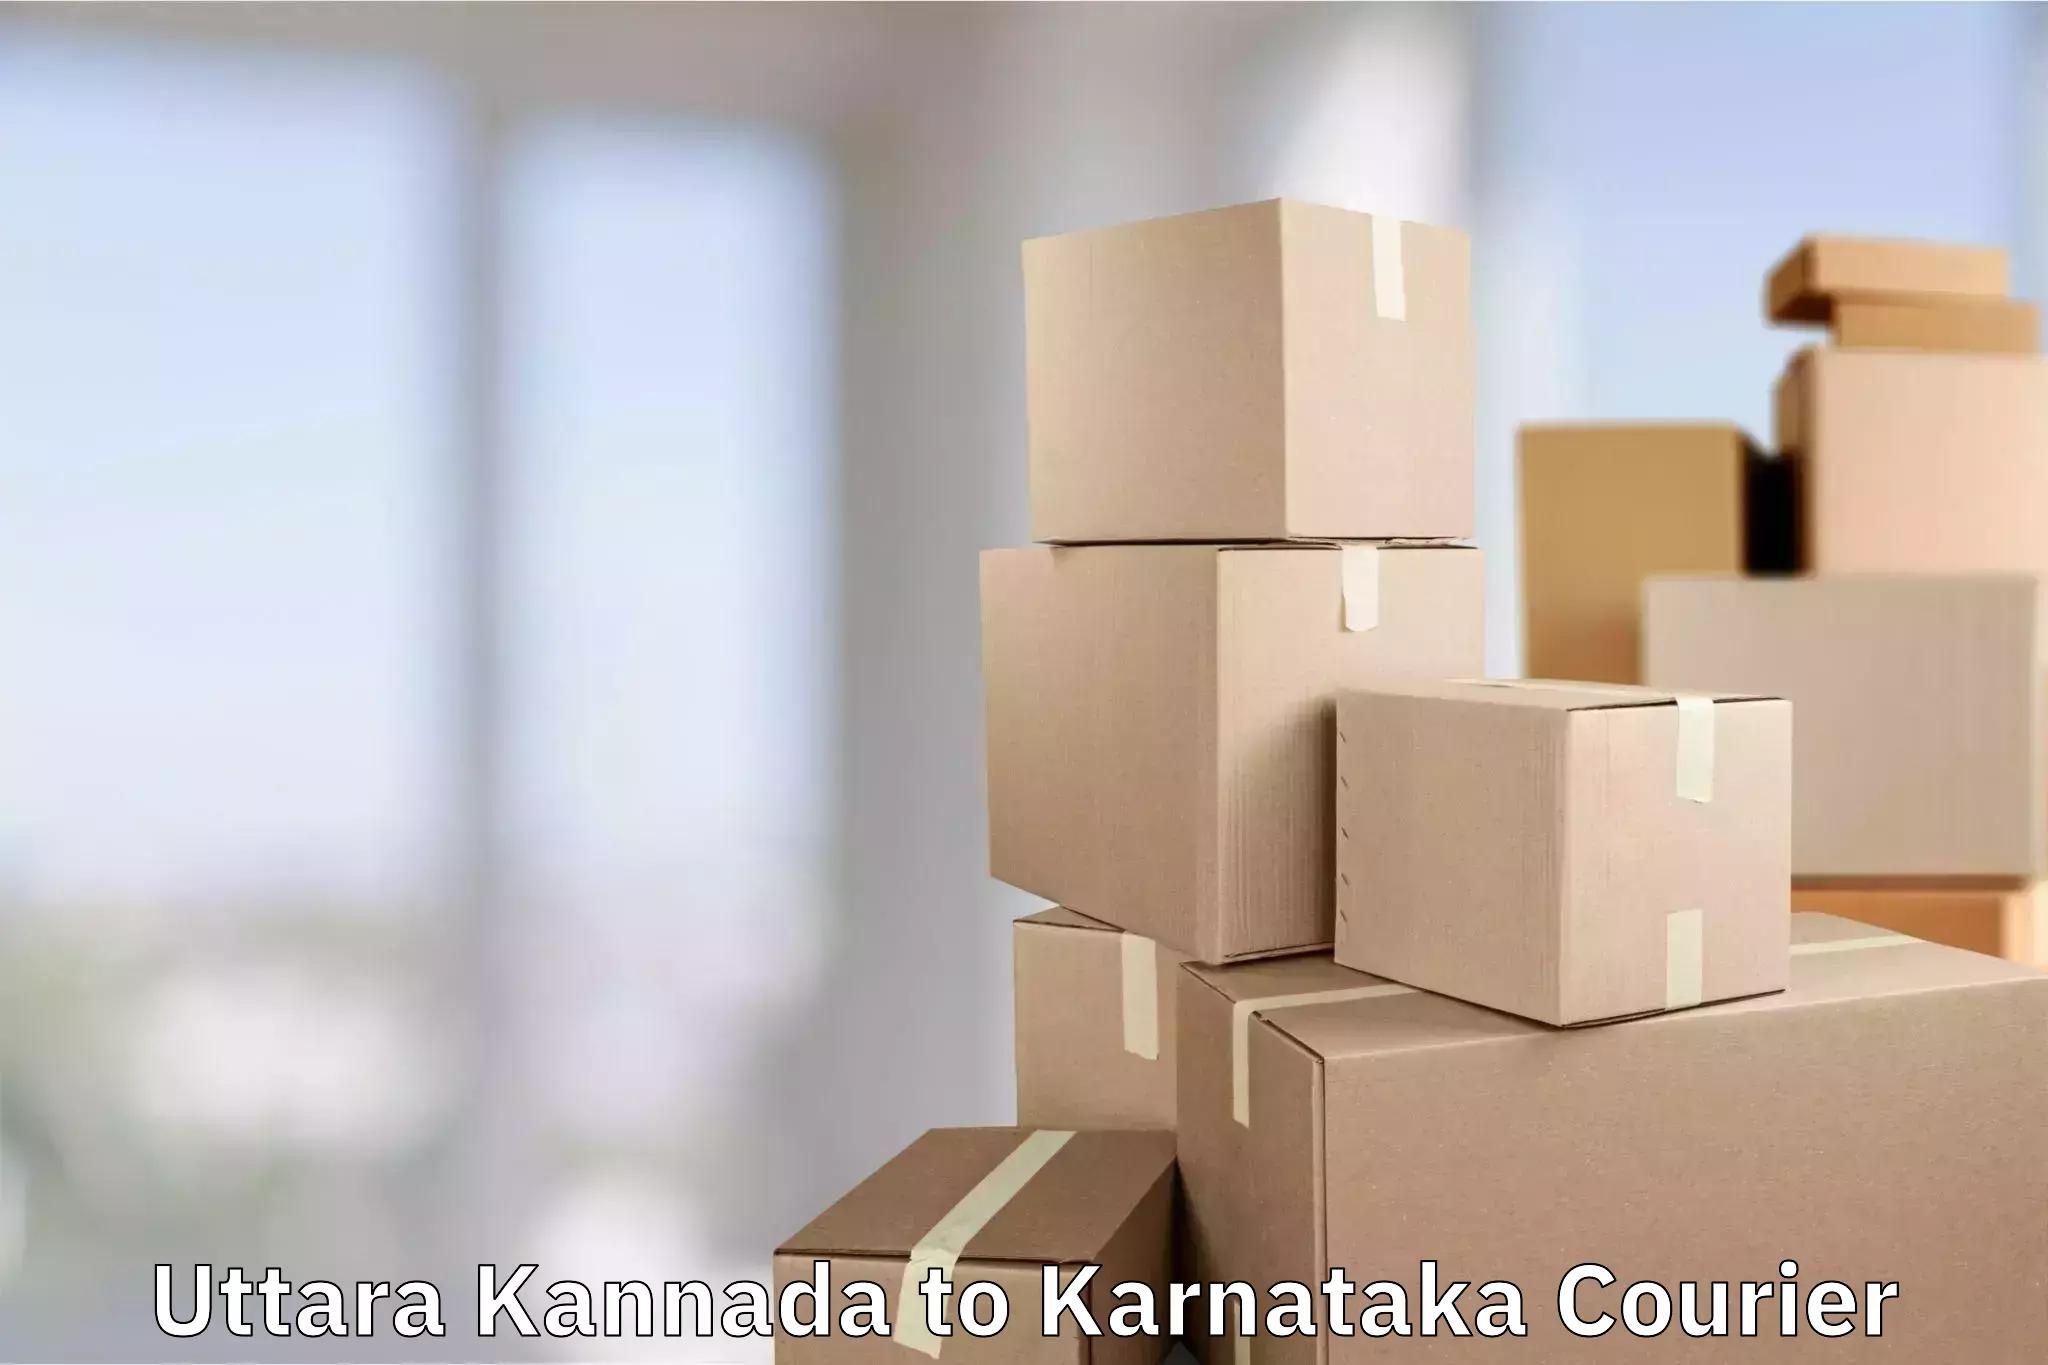 Luggage delivery app Uttara Kannada to Mangalore